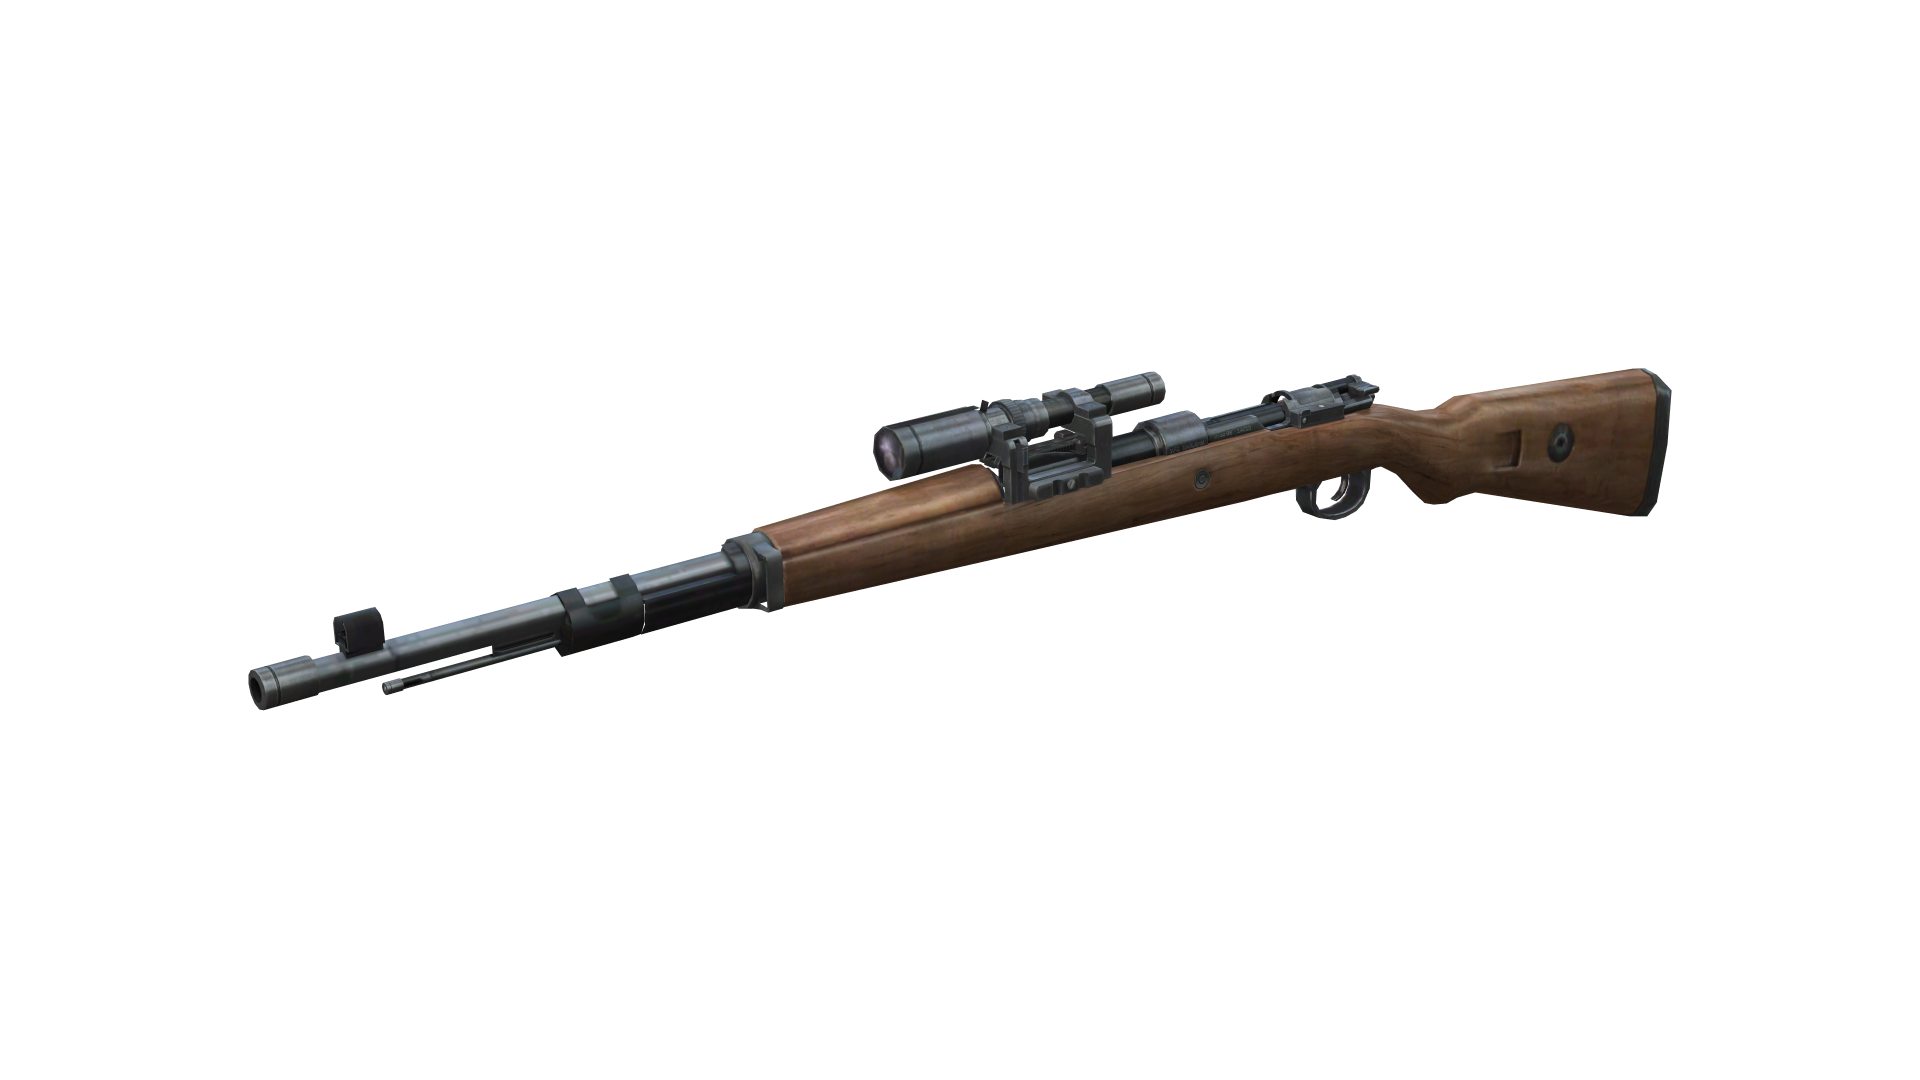 Classic Wooden Sniper